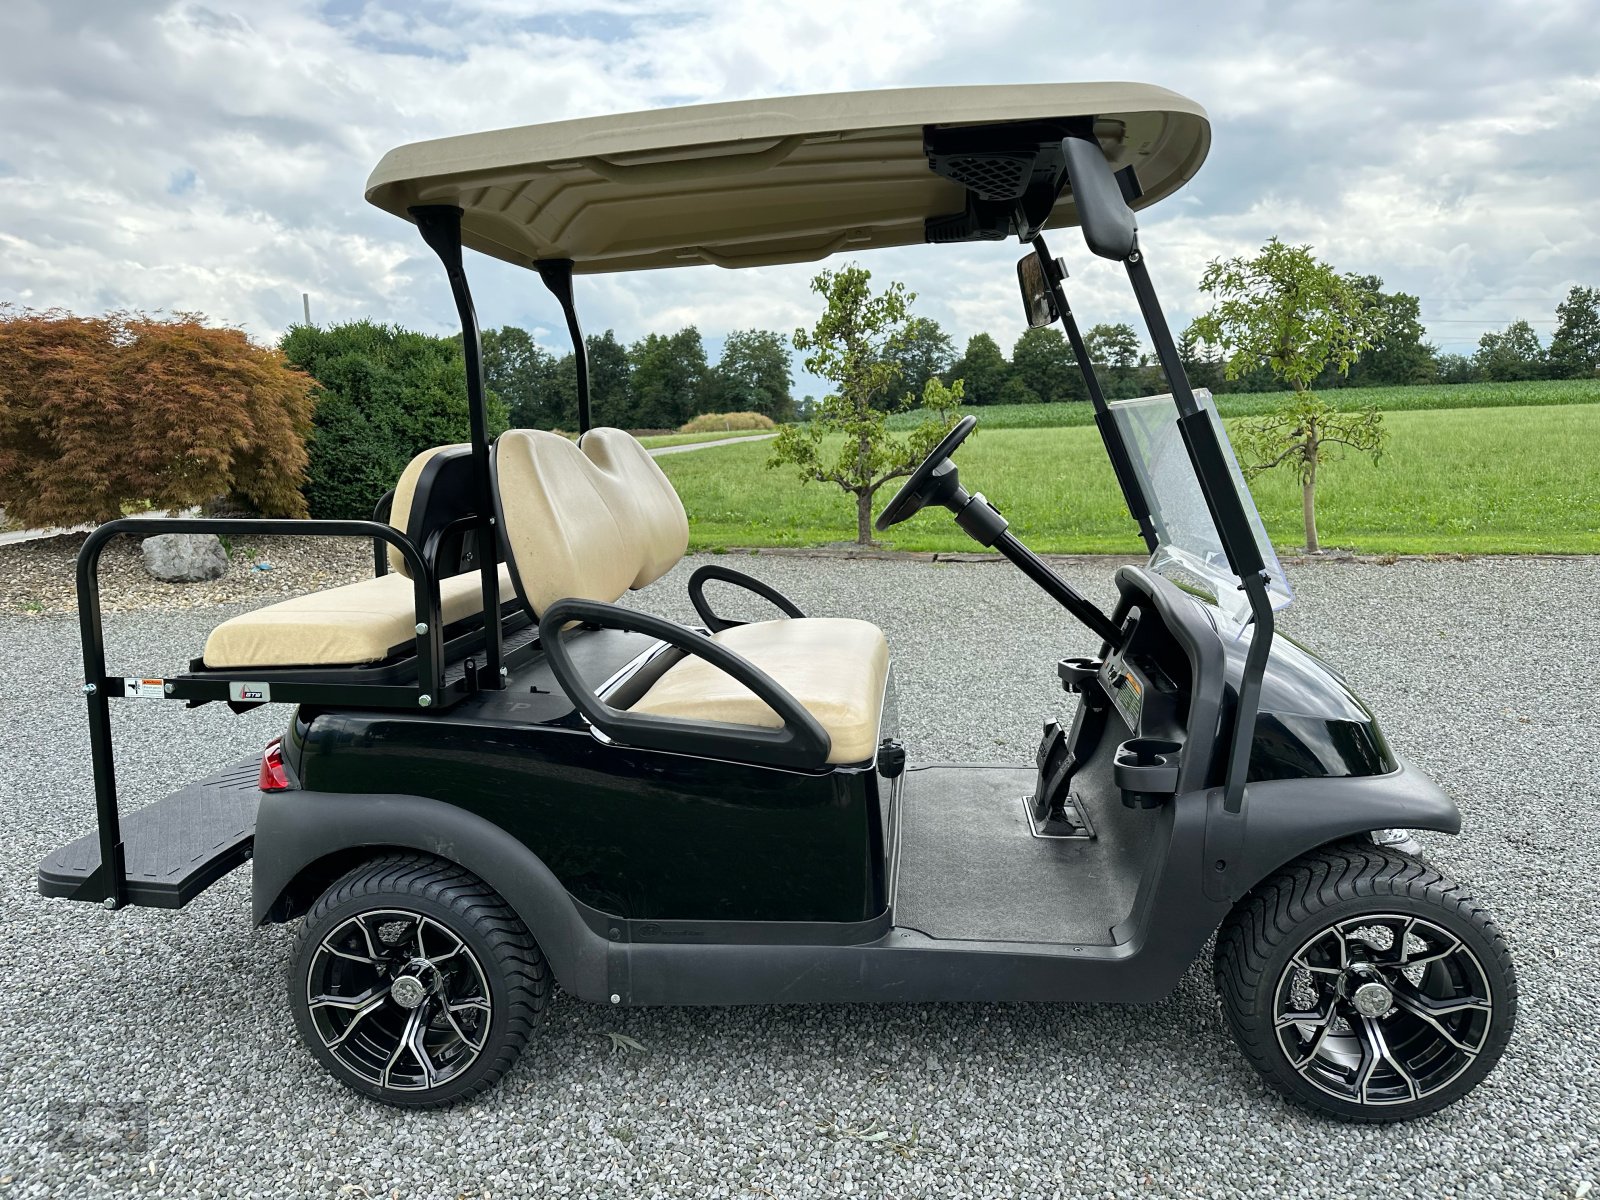 Sonstige Golftechnik des Typs Club Car Precedent 2018 exclusive 12 Zoll, Gebrauchtmaschine in Rankweil (Bild 8)